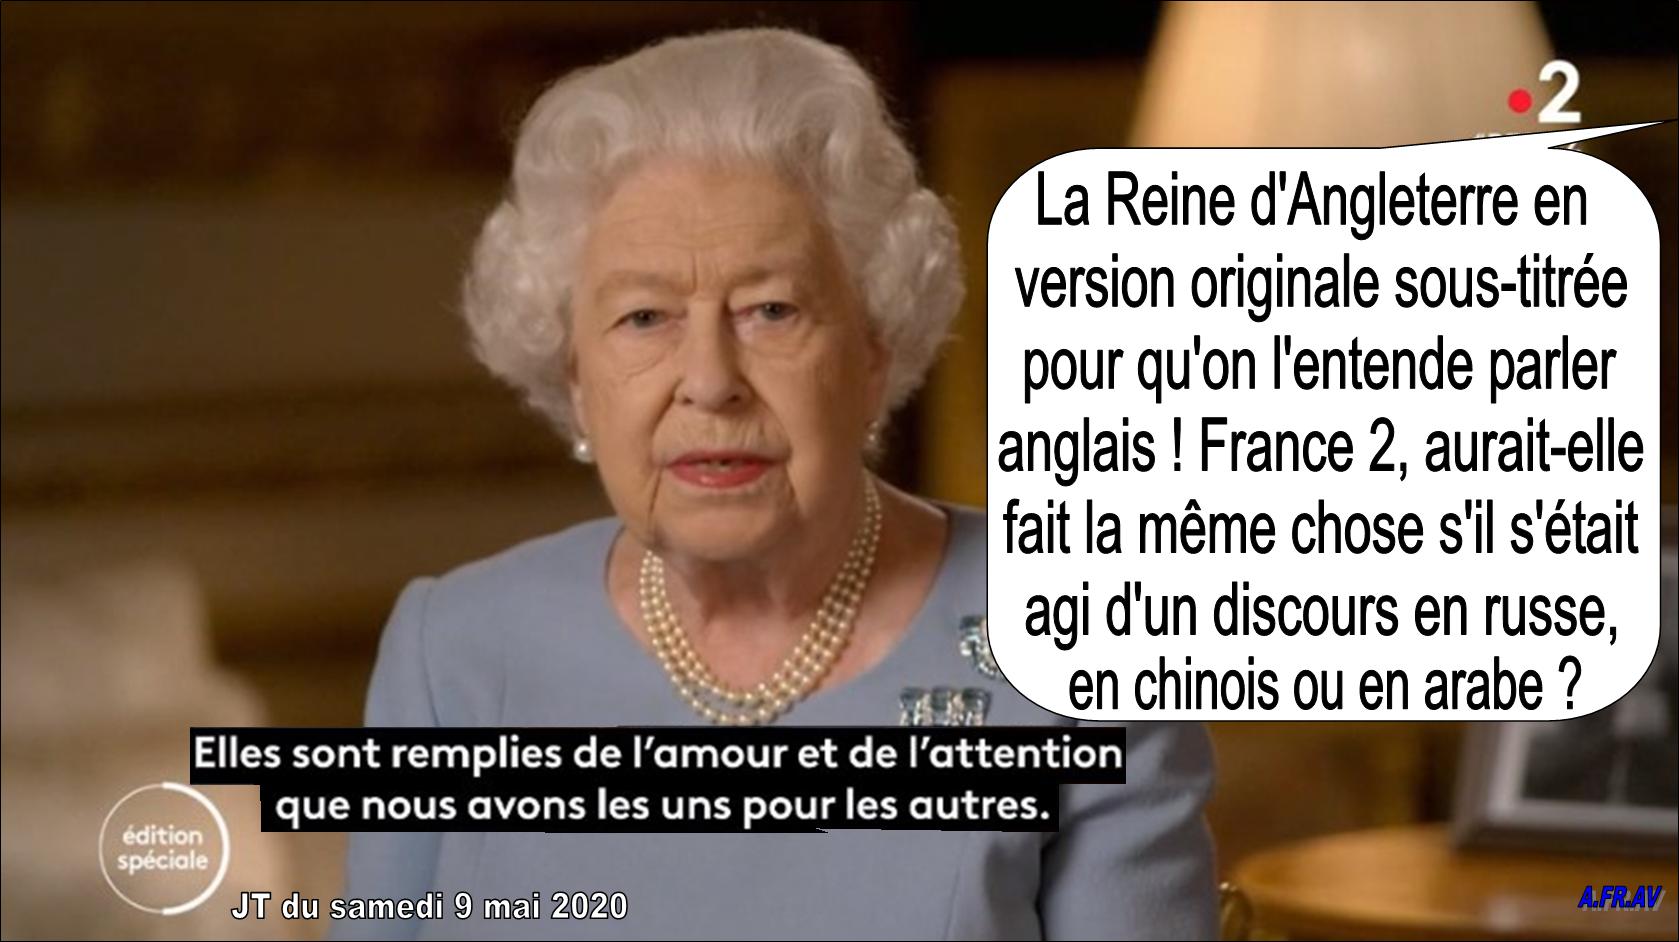 JT de 20h de France 2, la Reine d'Angleterre en version originale sous-titrée